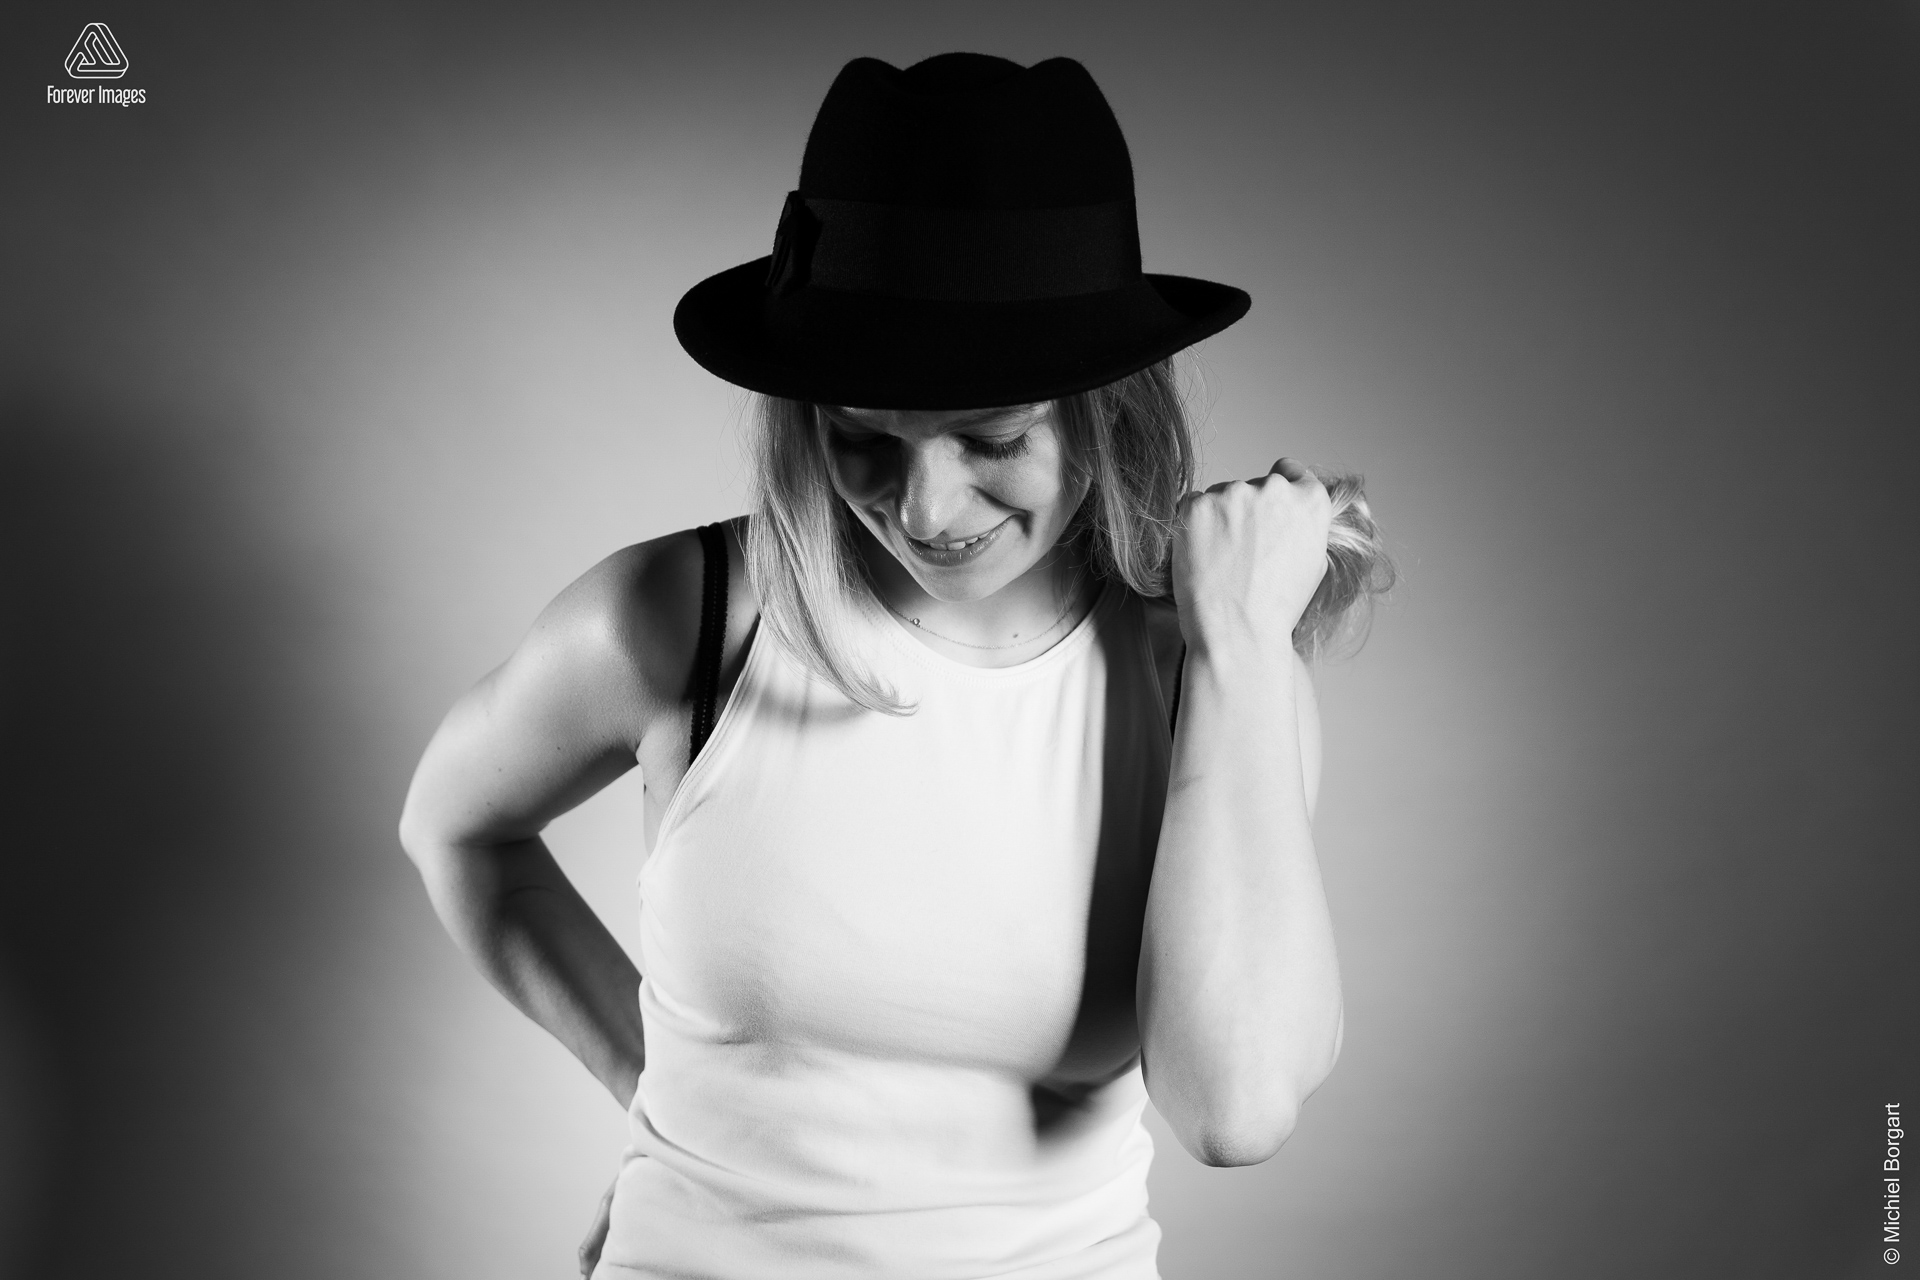 Portretfoto zwart-wit jonge dame wit hemdje zwarte hoed hand door haar | Fanziska | Portretfotograaf Michiel Borgart - Forever Images.